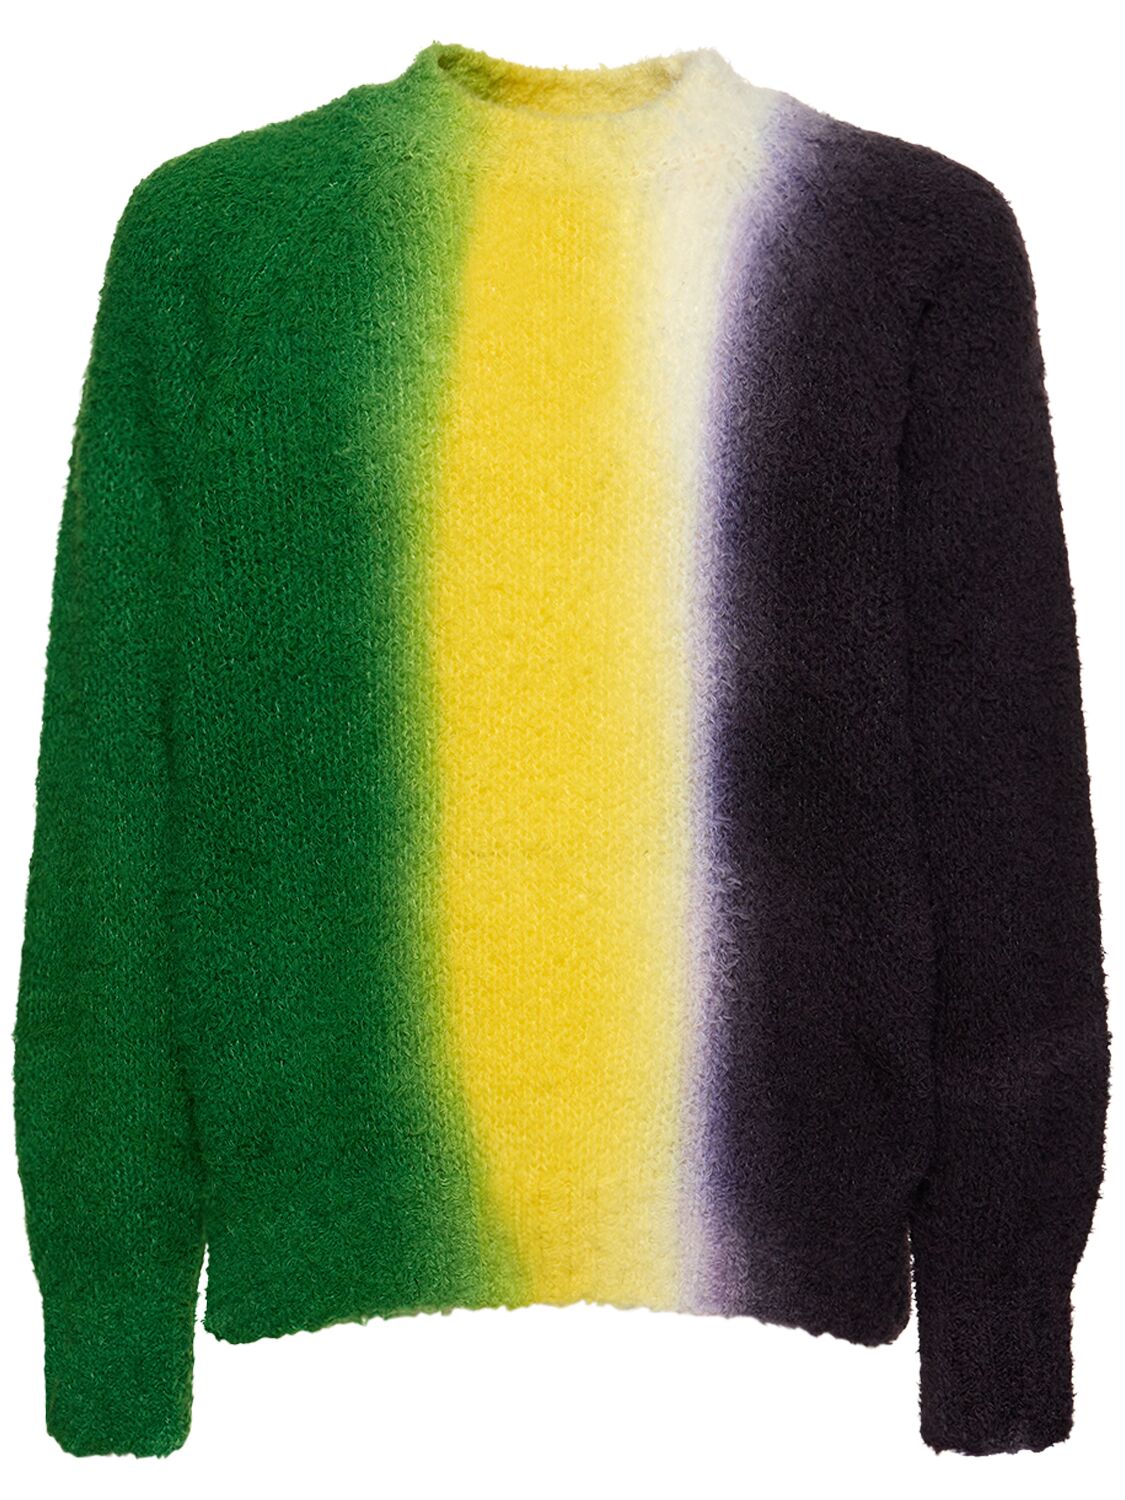 Image of Tie Dye Knit Sweater